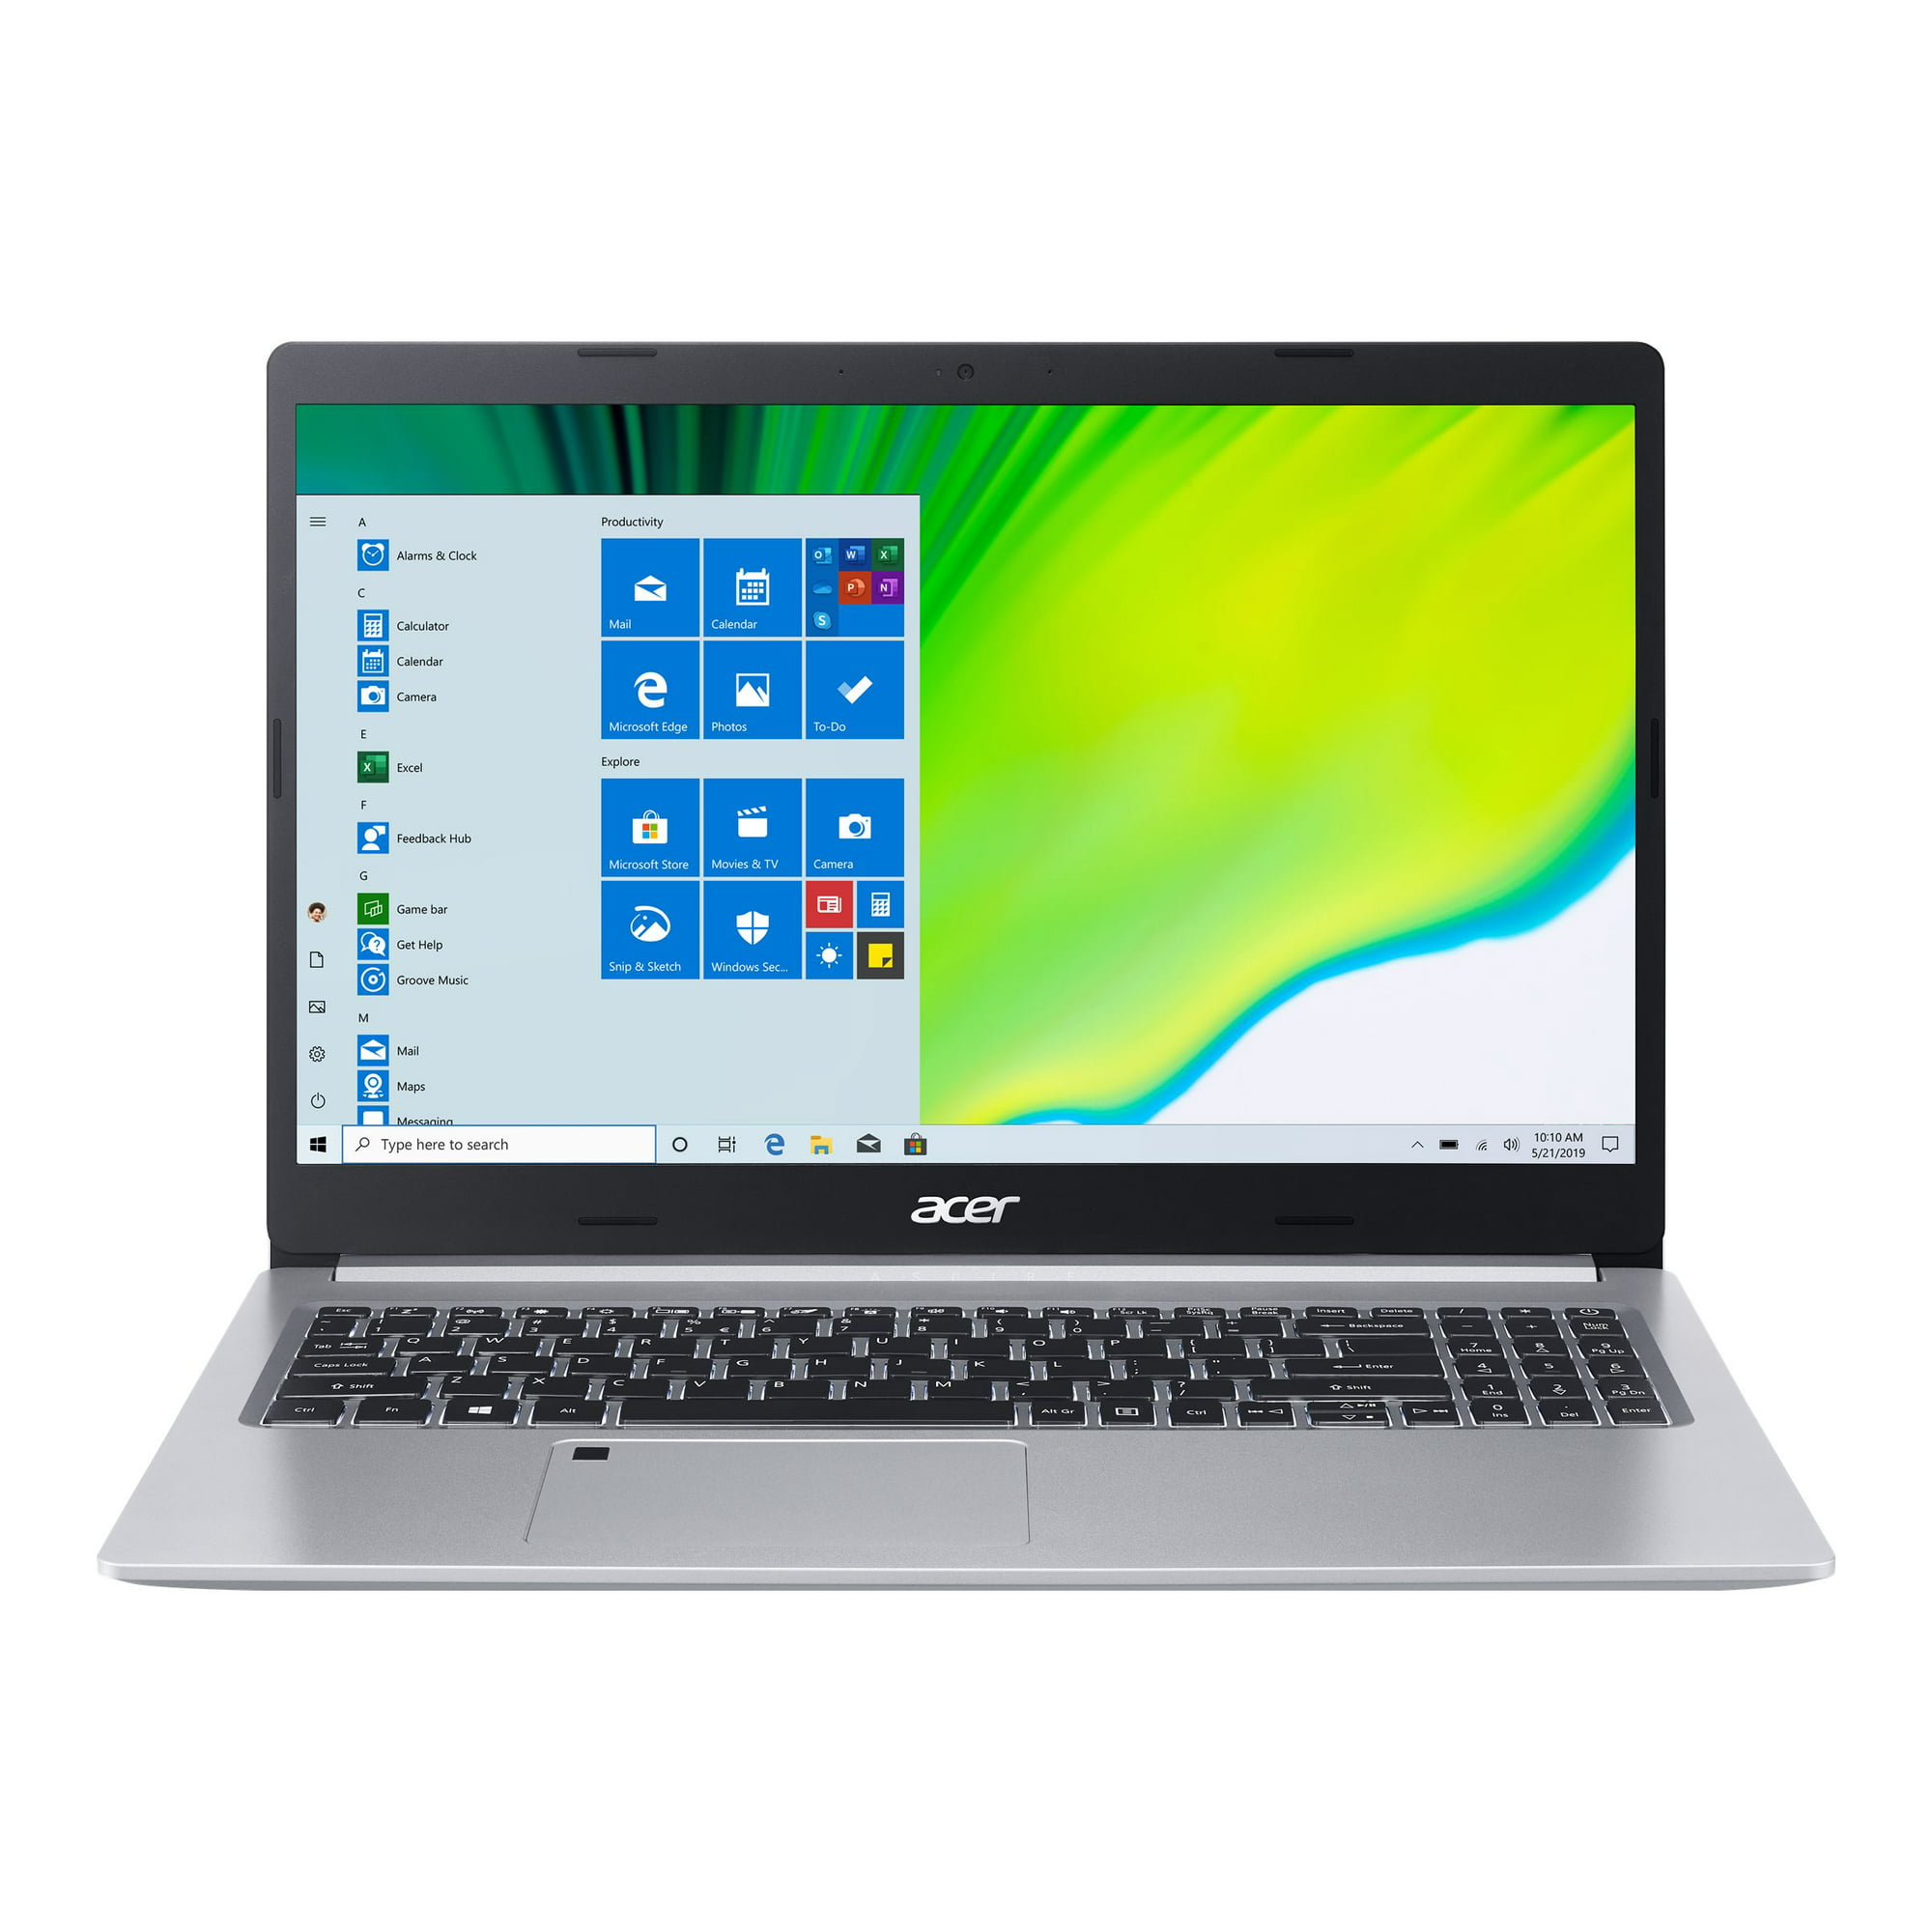 Acer Aspire 5 A515-44-R41B 15.6″ Laptop, AMD Ryzen 5, 8GB RAM, 256GB SSD